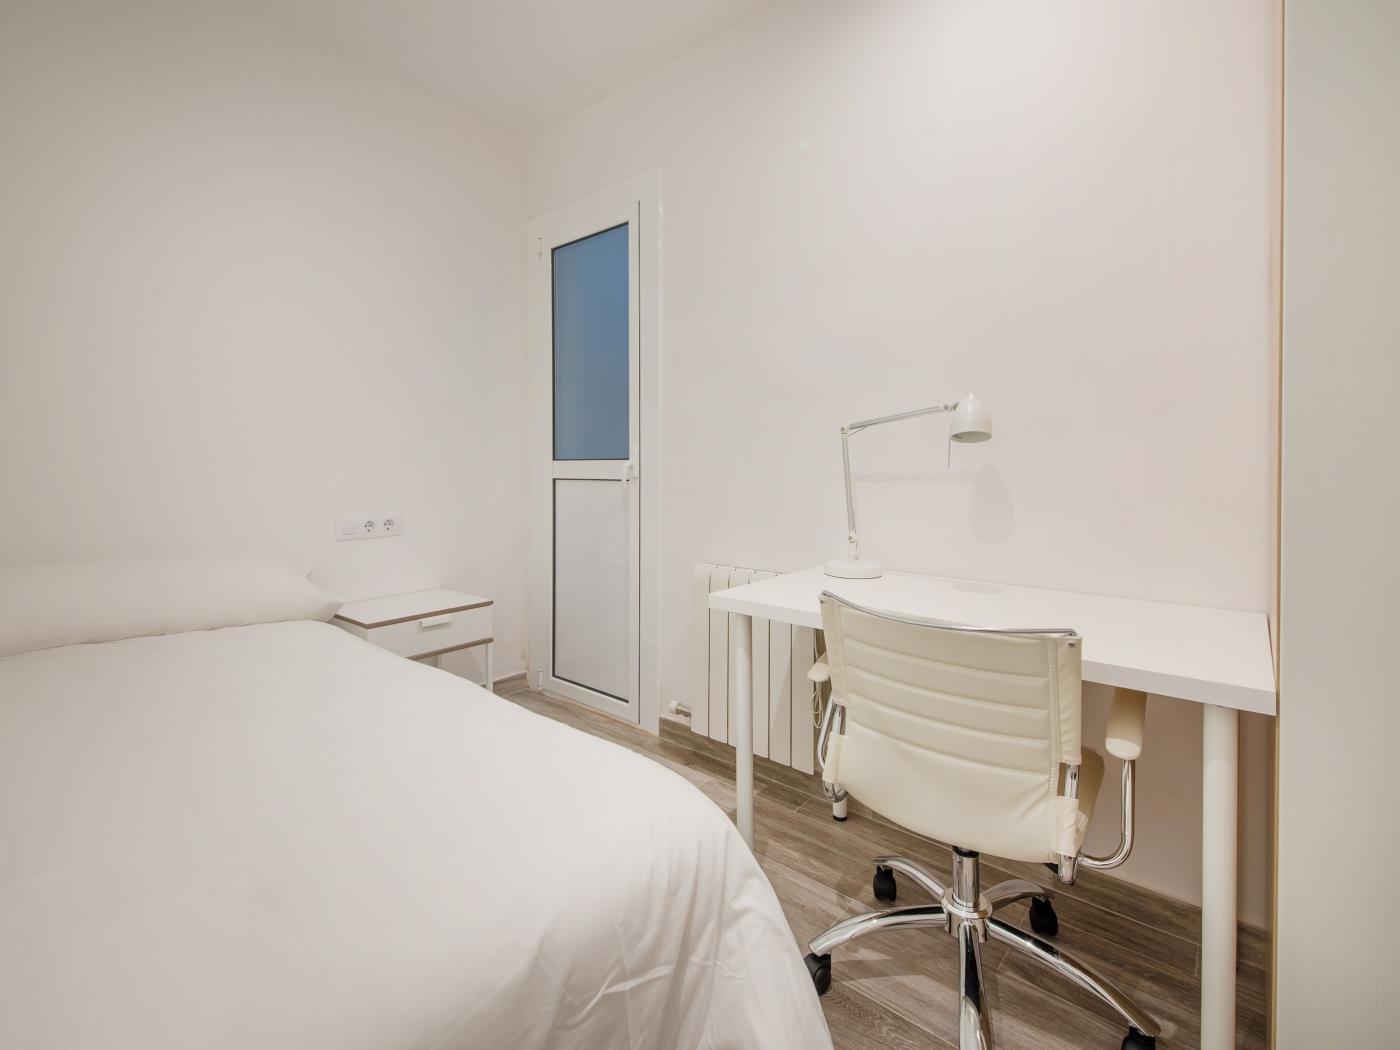 Wohnung mit privater Terrasse möbliert und ausgestattet für monatliche Vermietun - My Space Barcelona Appartementen